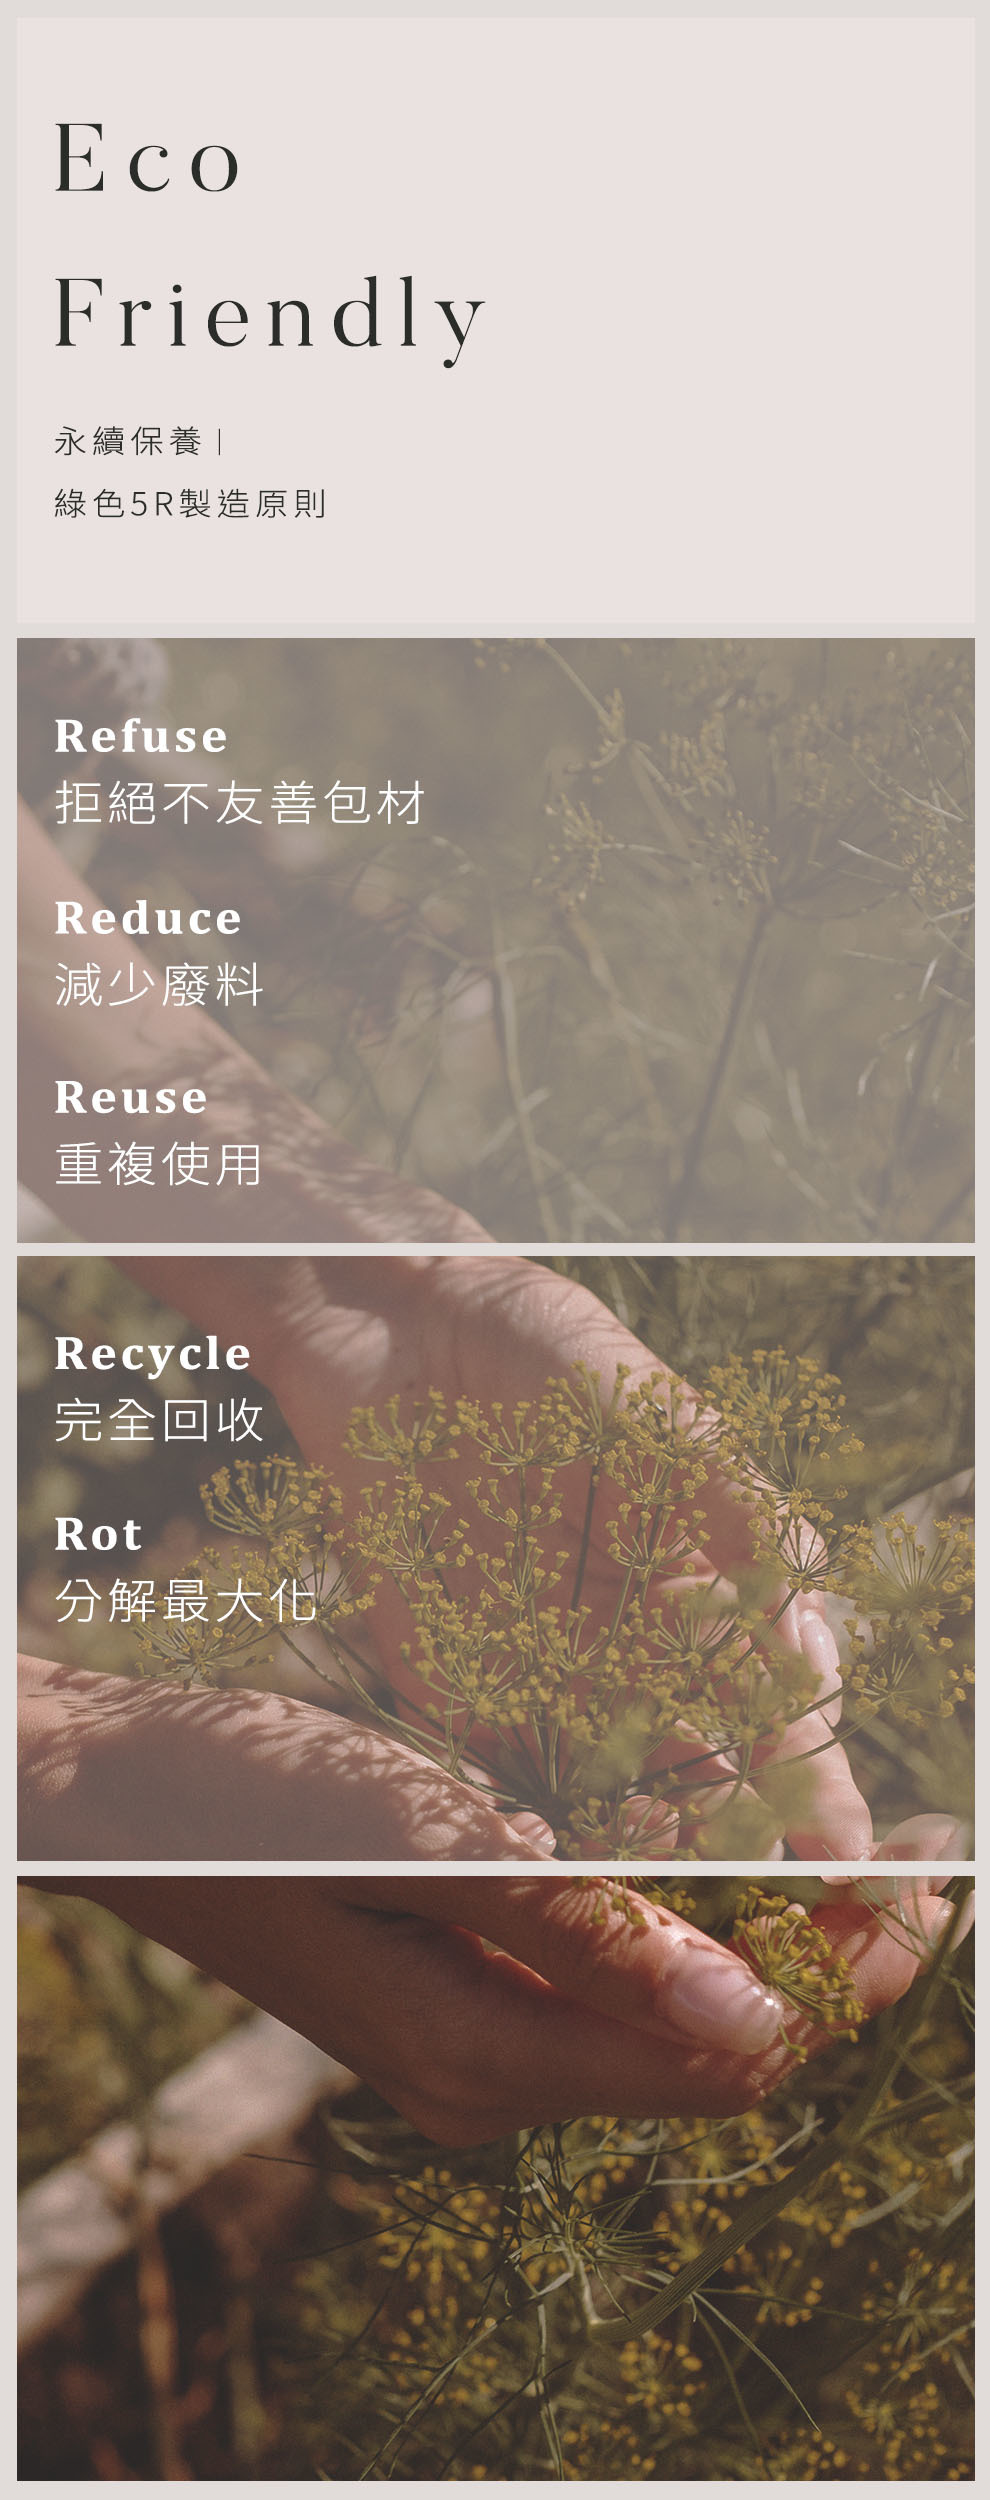 產品的環境友善 Eco Friendly.永續保養，綠色5R製造原則，1.Refuse 拒絕不友善包材 2.Reduce 減少廢料 3.Reuse 重複使用 4.Recycle 完全回收 5.Rot 分解最大化